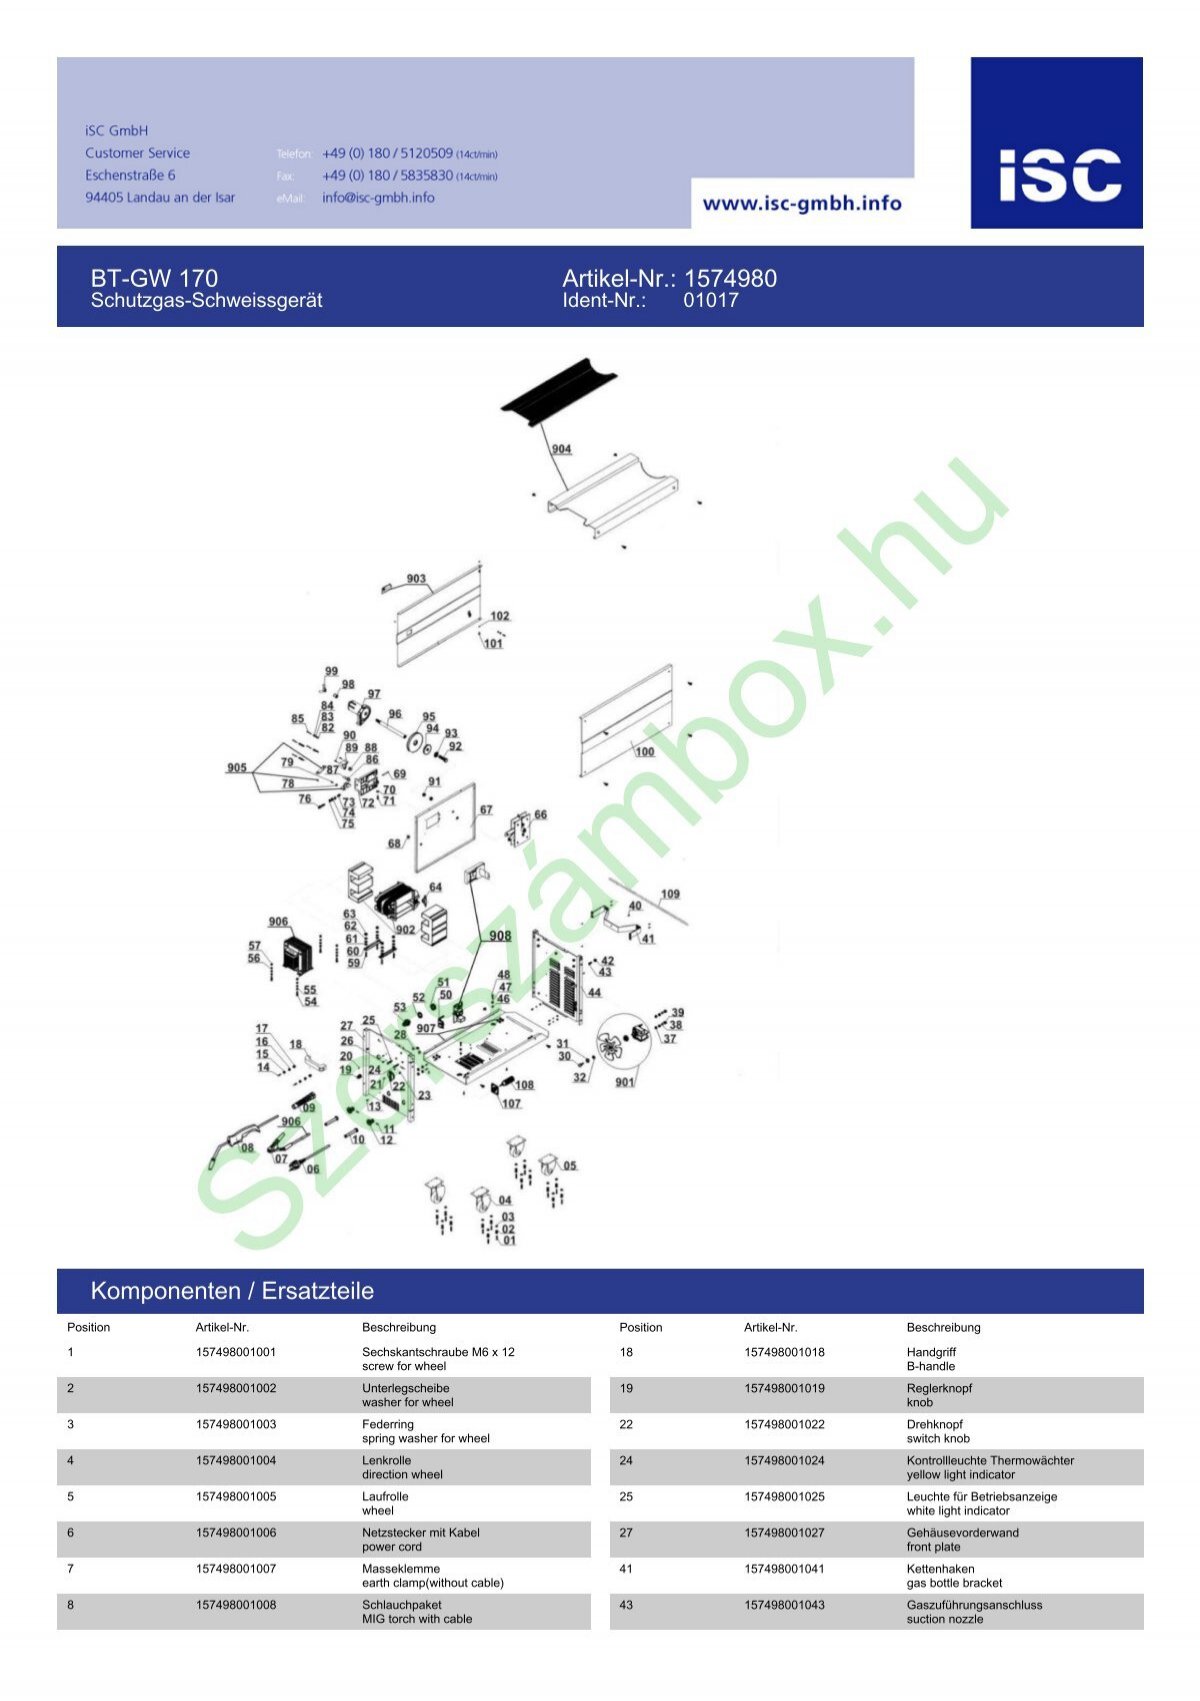 BT-GW 170 Artikel-Nr.: 1574980 Komponenten / Ersatzteile